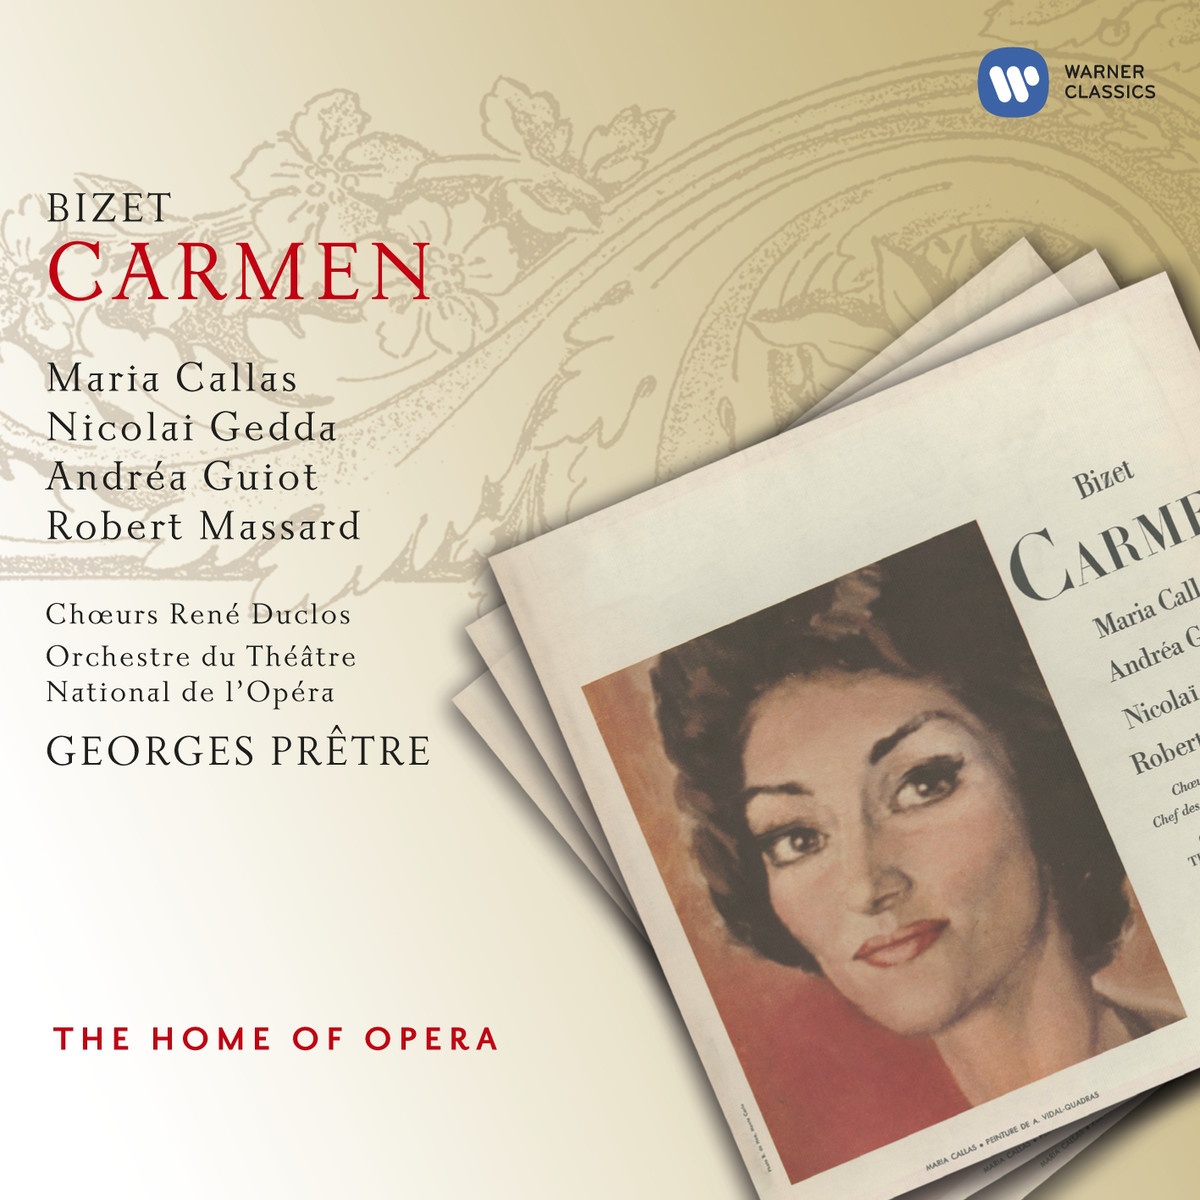 Carmen 1997 Digital Remaster, Act 2: Halte la!